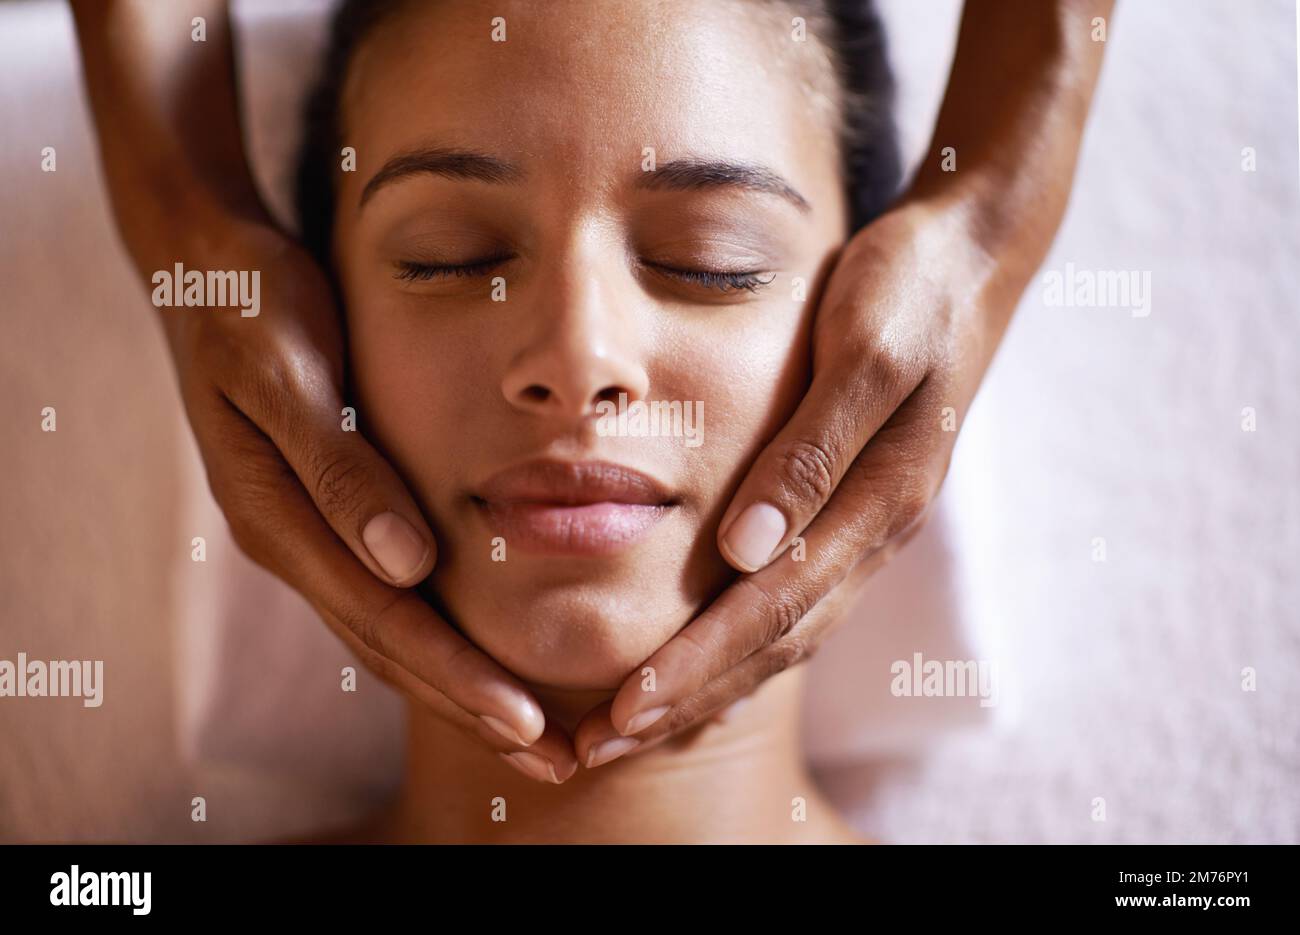 Das fühlt sich göttlich an. Eine junge Frau bekommt eine Kopfmassage in einem Schönheitssalon. Stockfoto